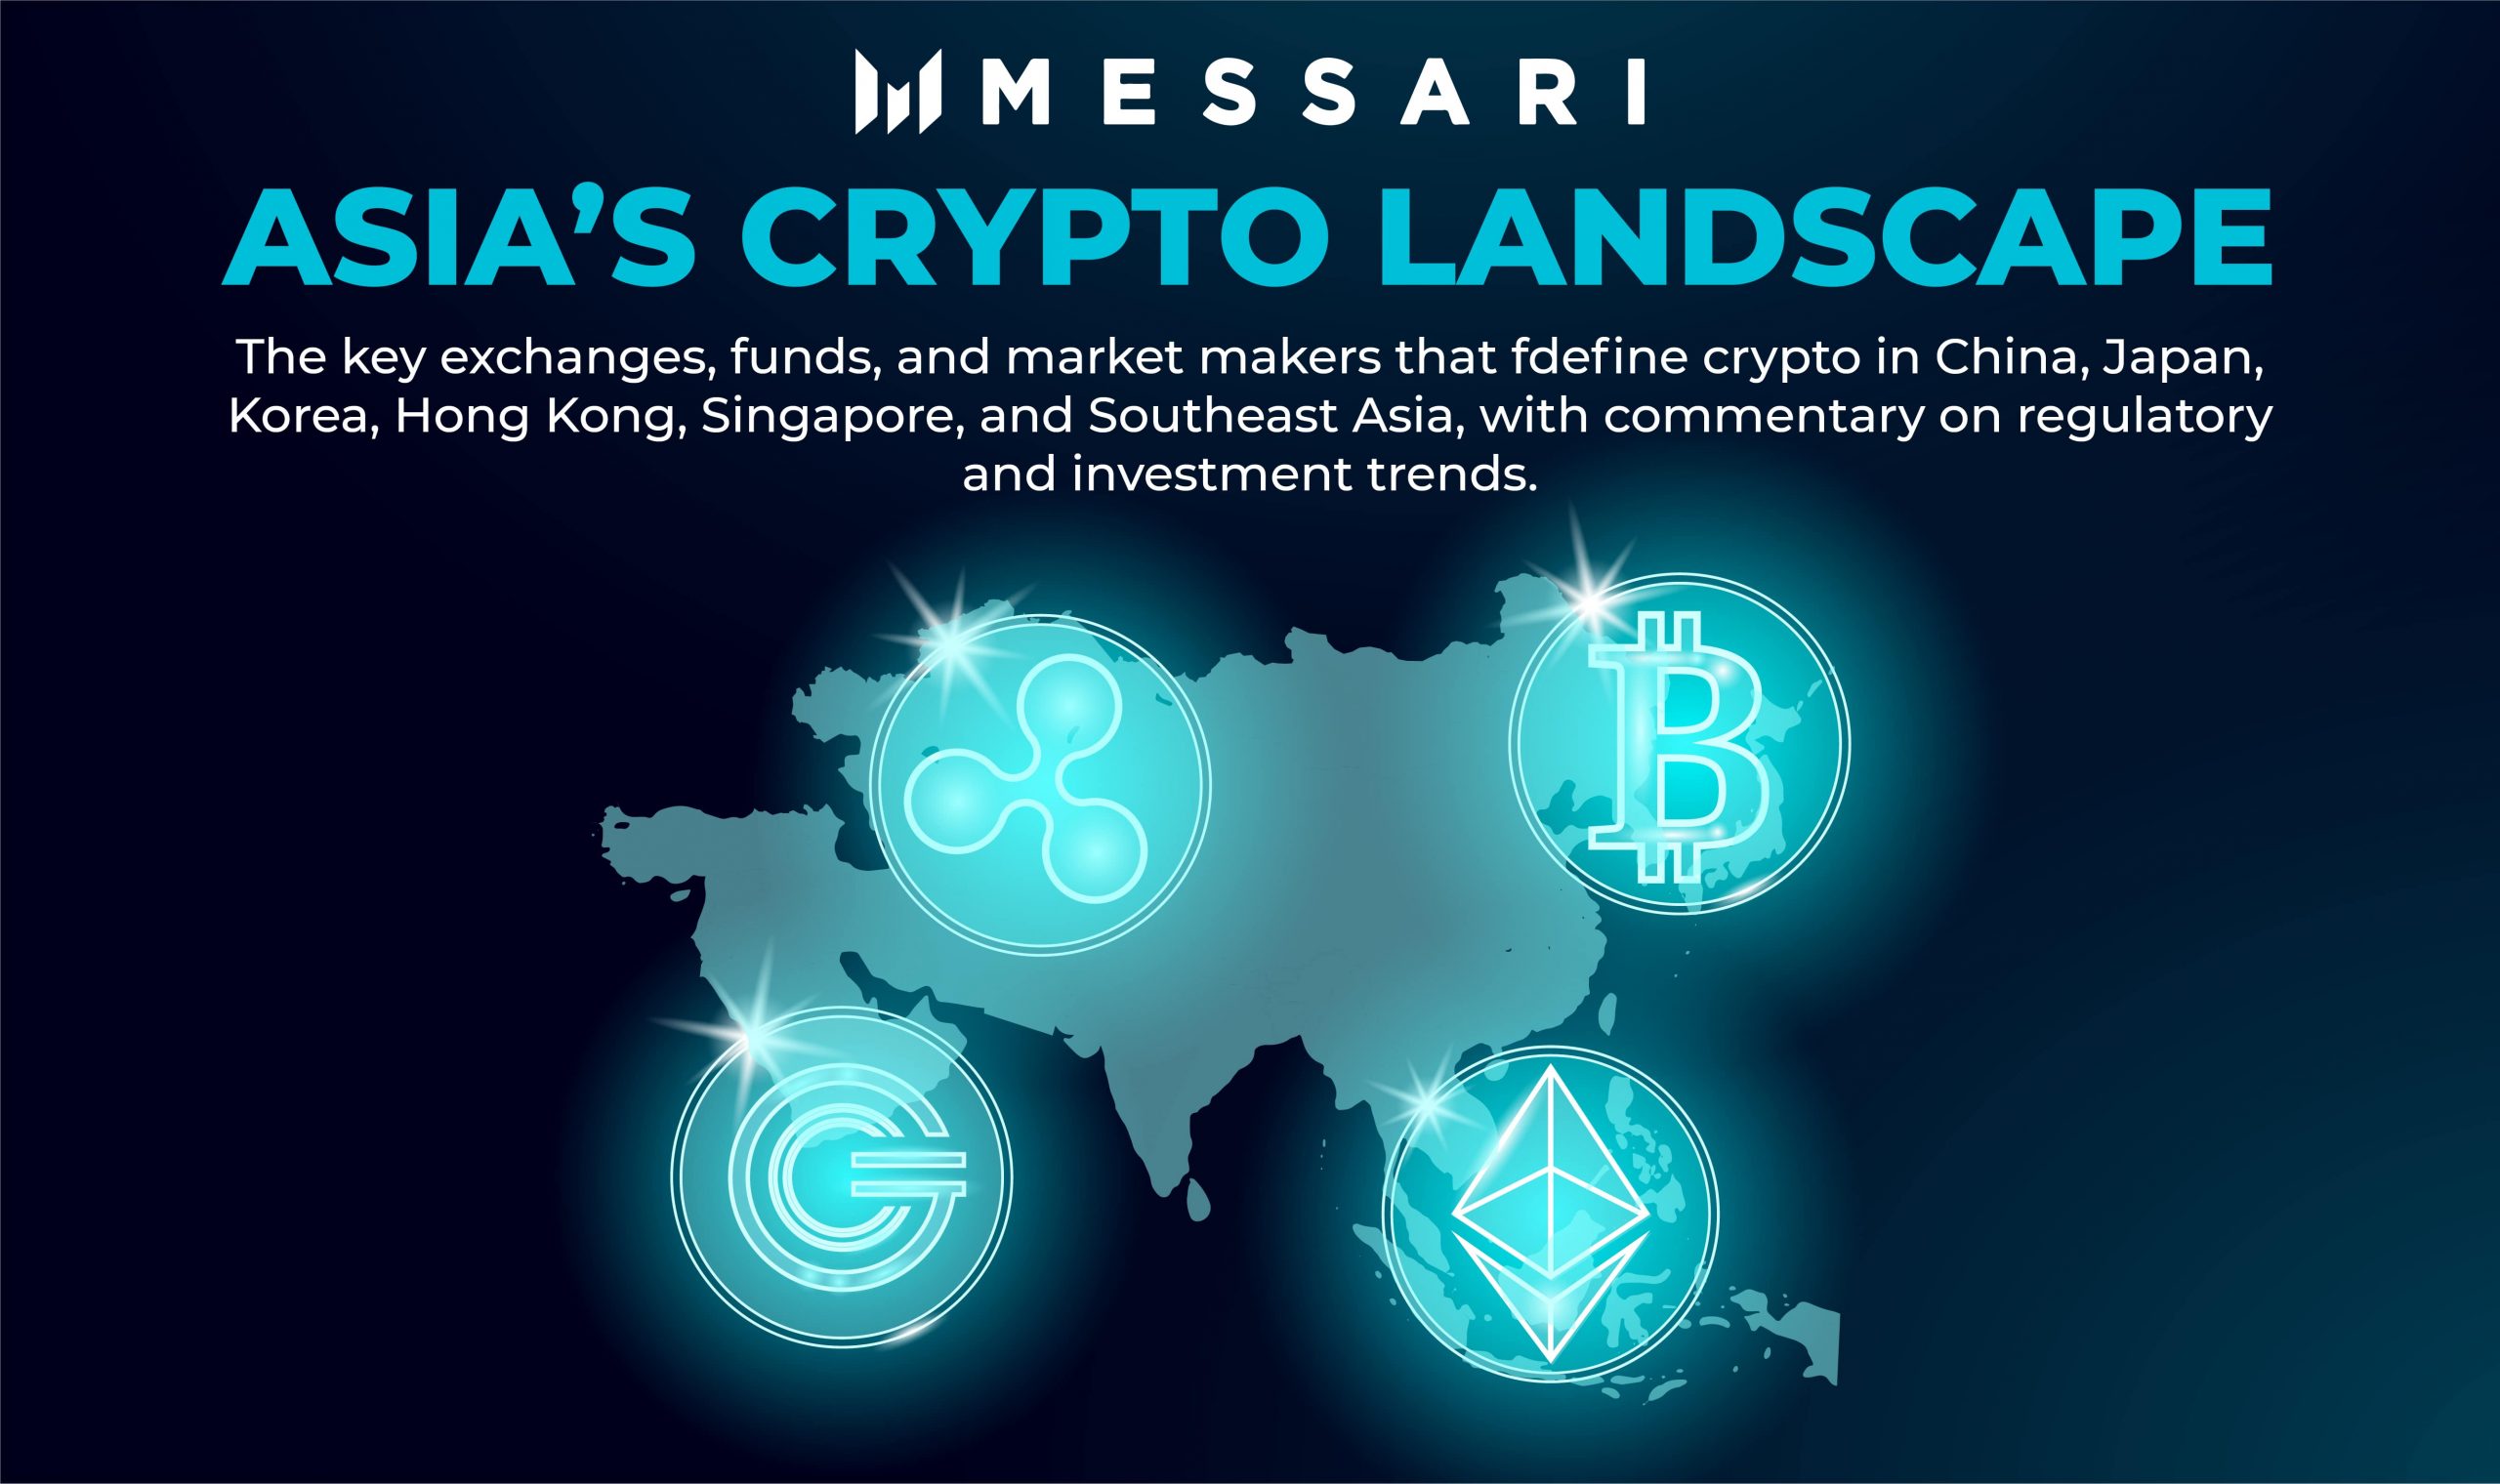 New Messari Report - “Asia’s Crypto Landscape” - BitcoinVN ...